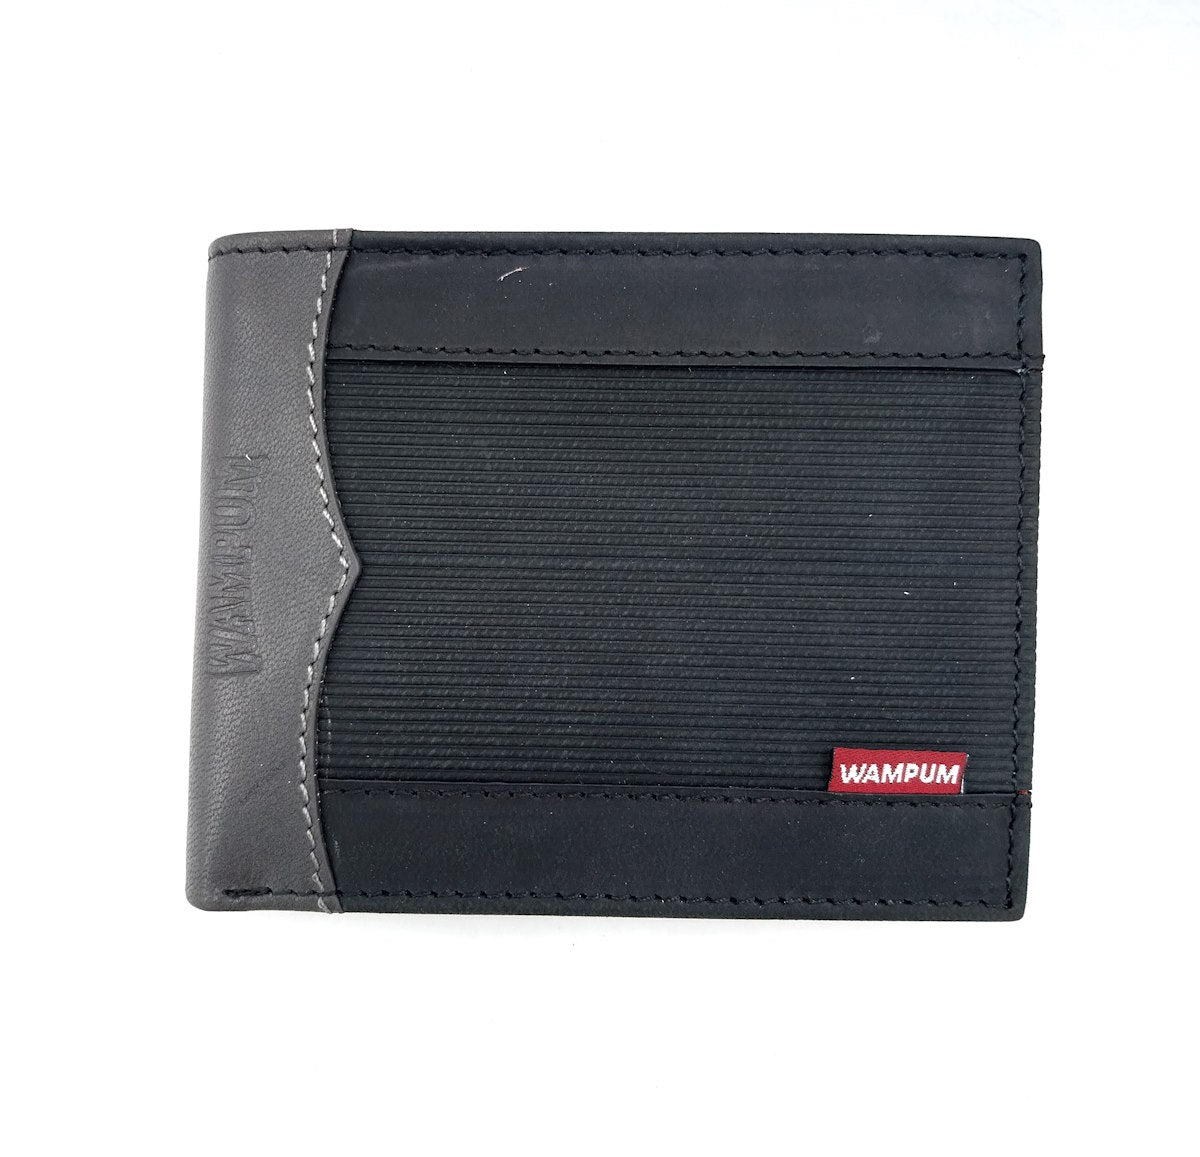 Genuine leather wallet, Wampum, art. pdk401-1